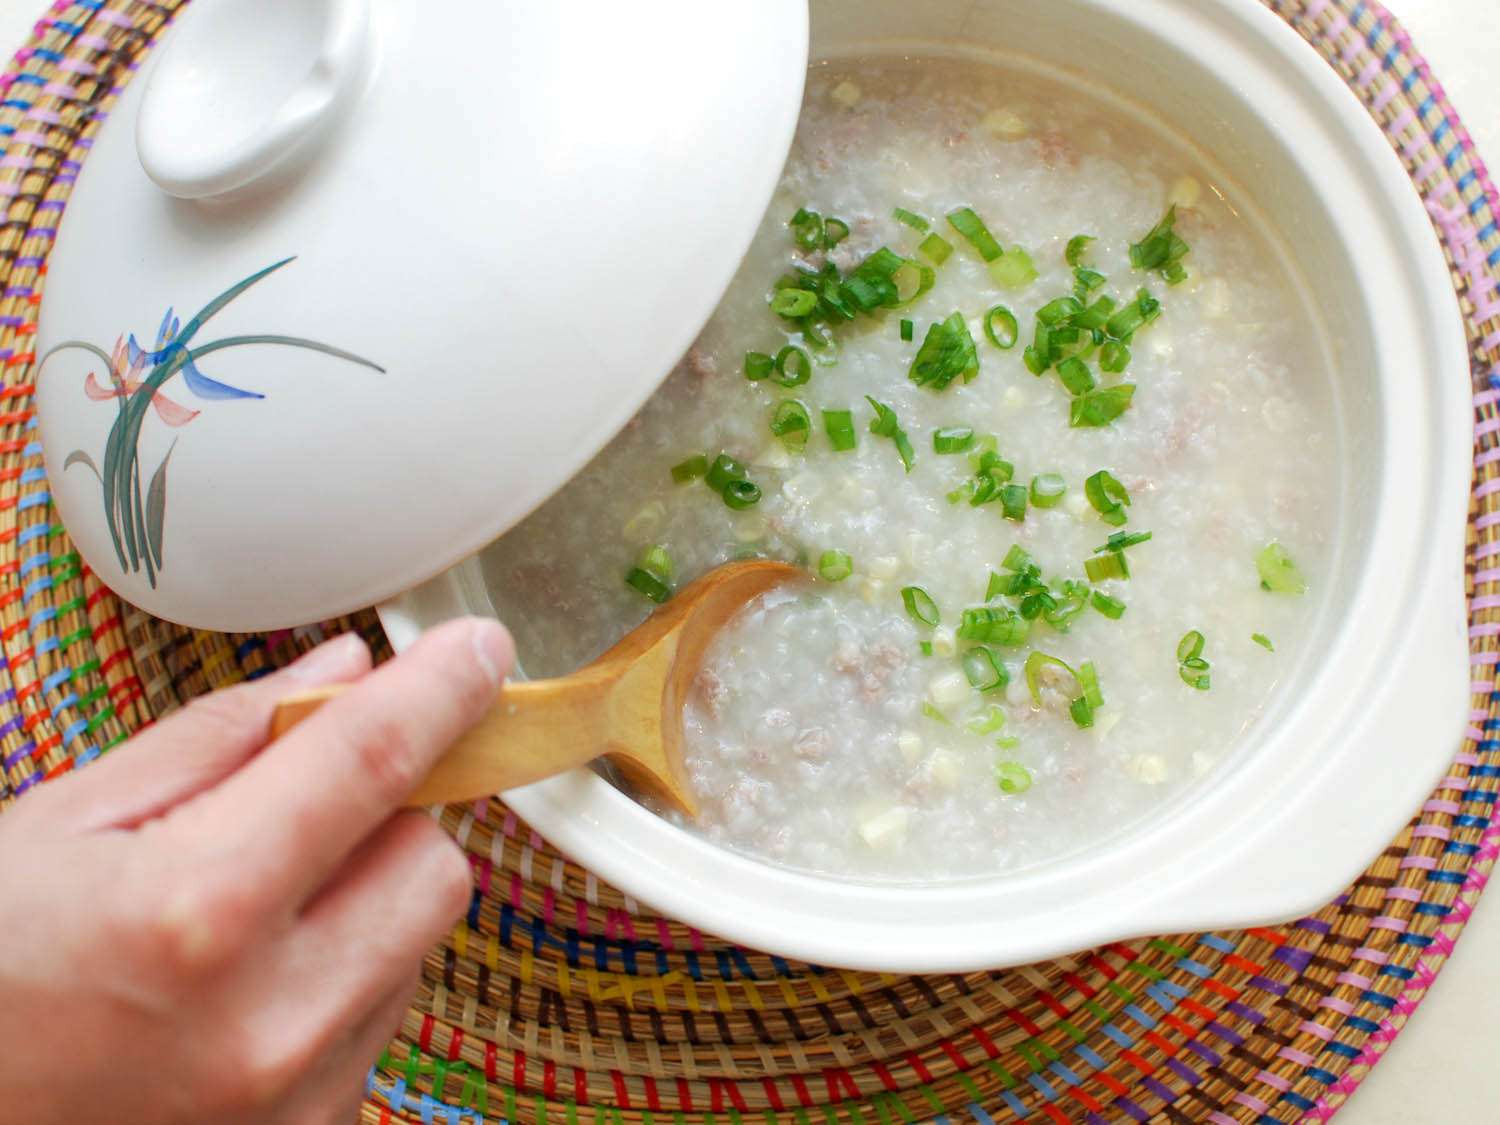 用木勺搅拌煮好的粥。